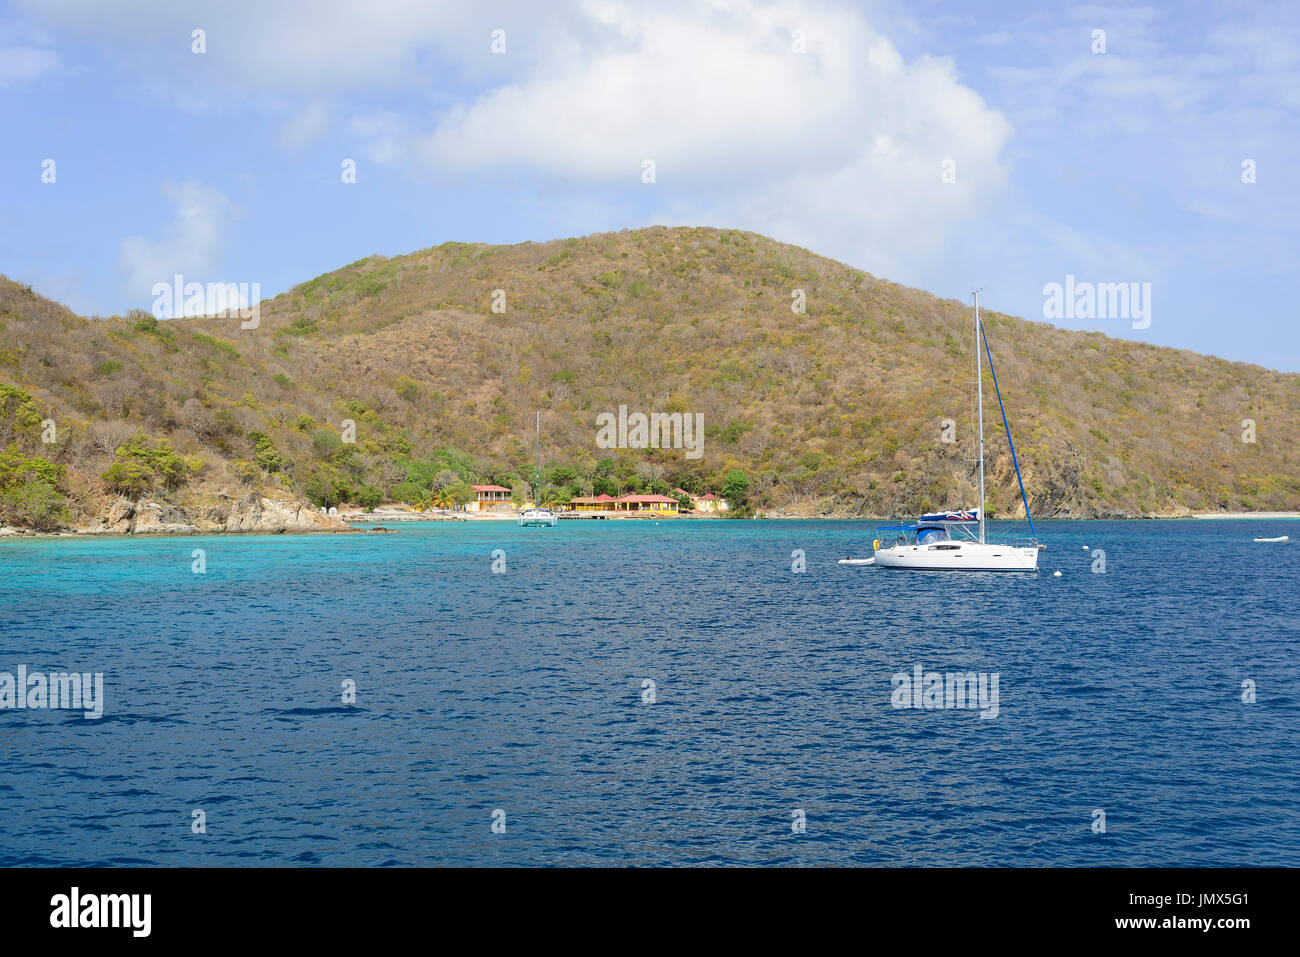 Bateau à voile Tortola, l'île en mer des Caraïbes, l'île de Tortola, British Virgin Islands, mer des Caraïbes Banque D'Images